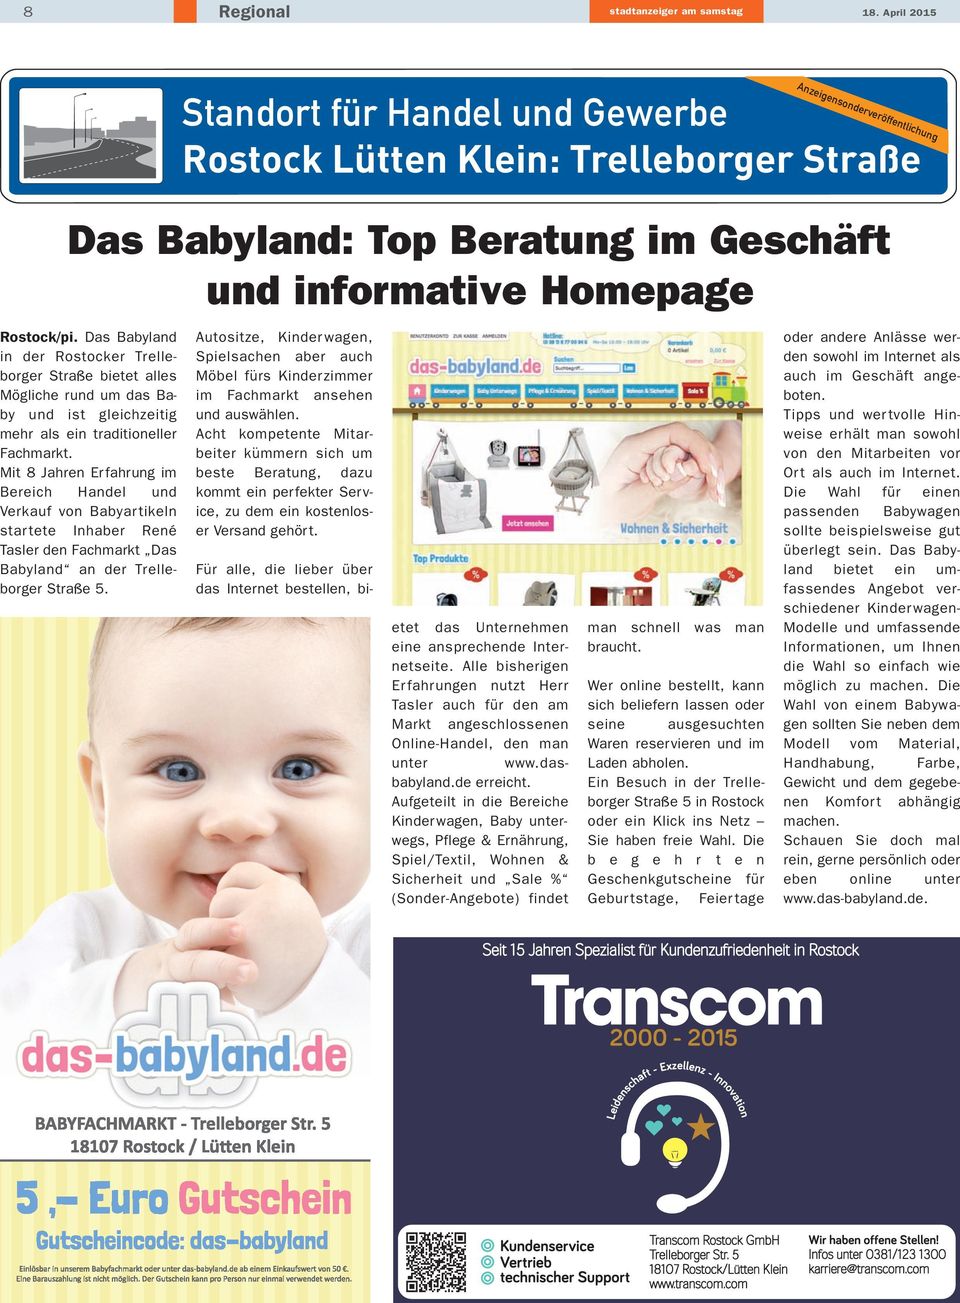 Das Babyland in der Rostocker Trelleborger Straße bietet alles Mögliche rund um das Baby und ist gleichzeitig mehr als ein traditioneller Fachmarkt.